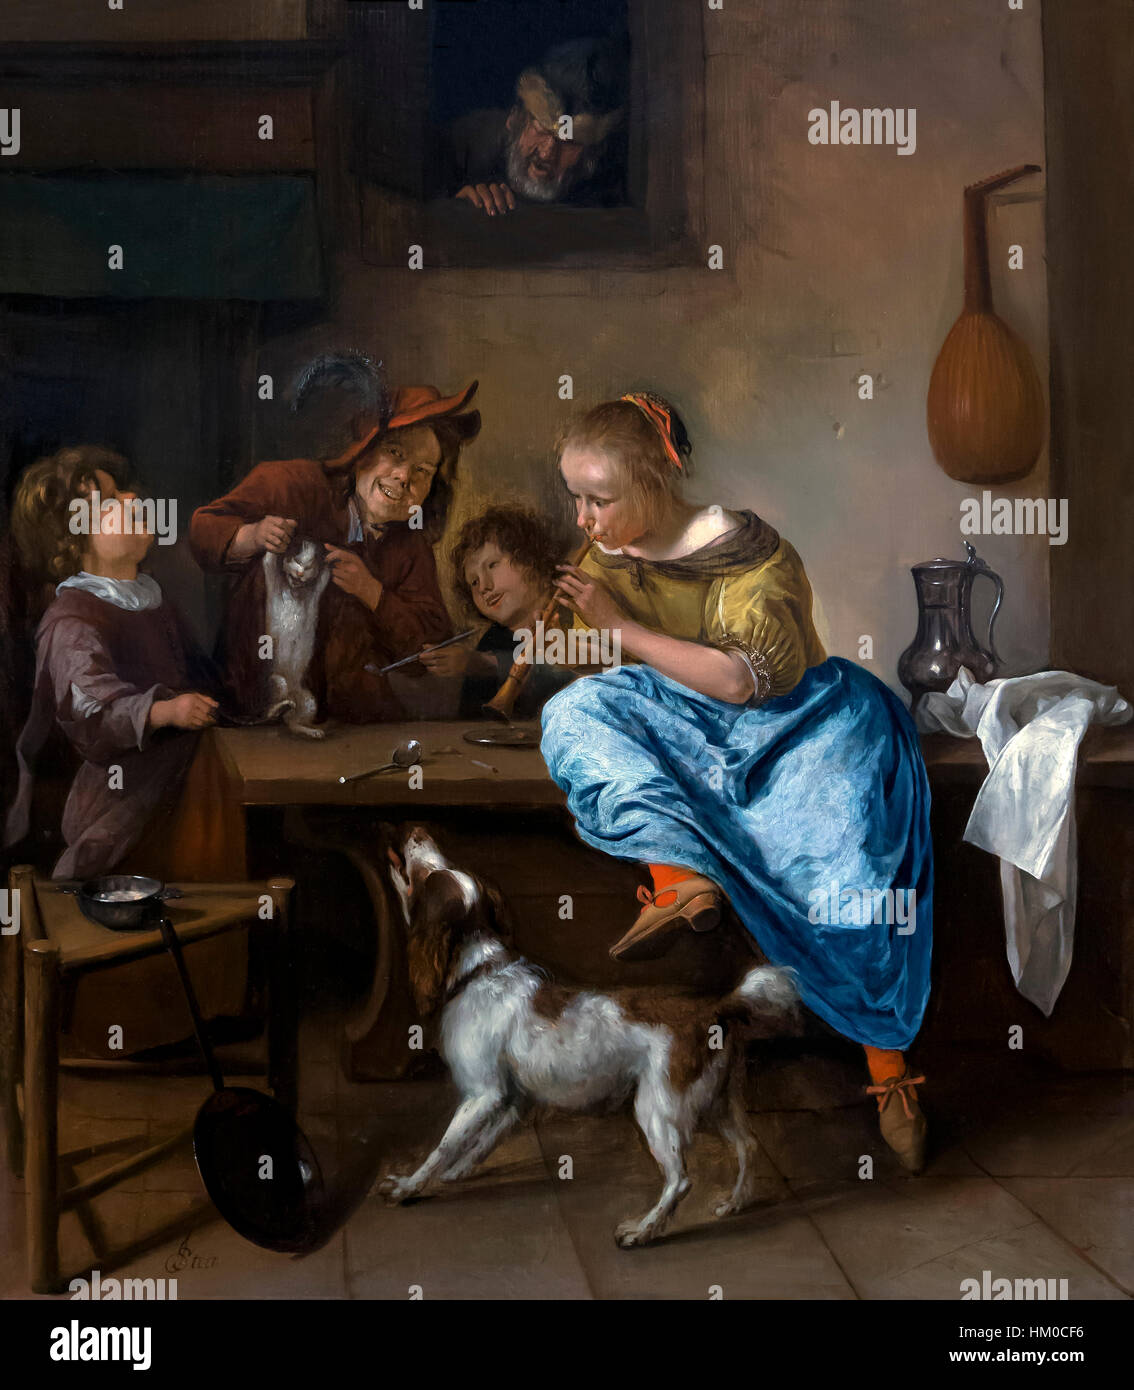 Les enfants l'enseignement d'un chat à la danse, la leçon de danse, de Jan Steen, 1660-79, huile sur panneau, Rijksmuseum, Amsterdam, Pays-Bas, Europe, Banque D'Images